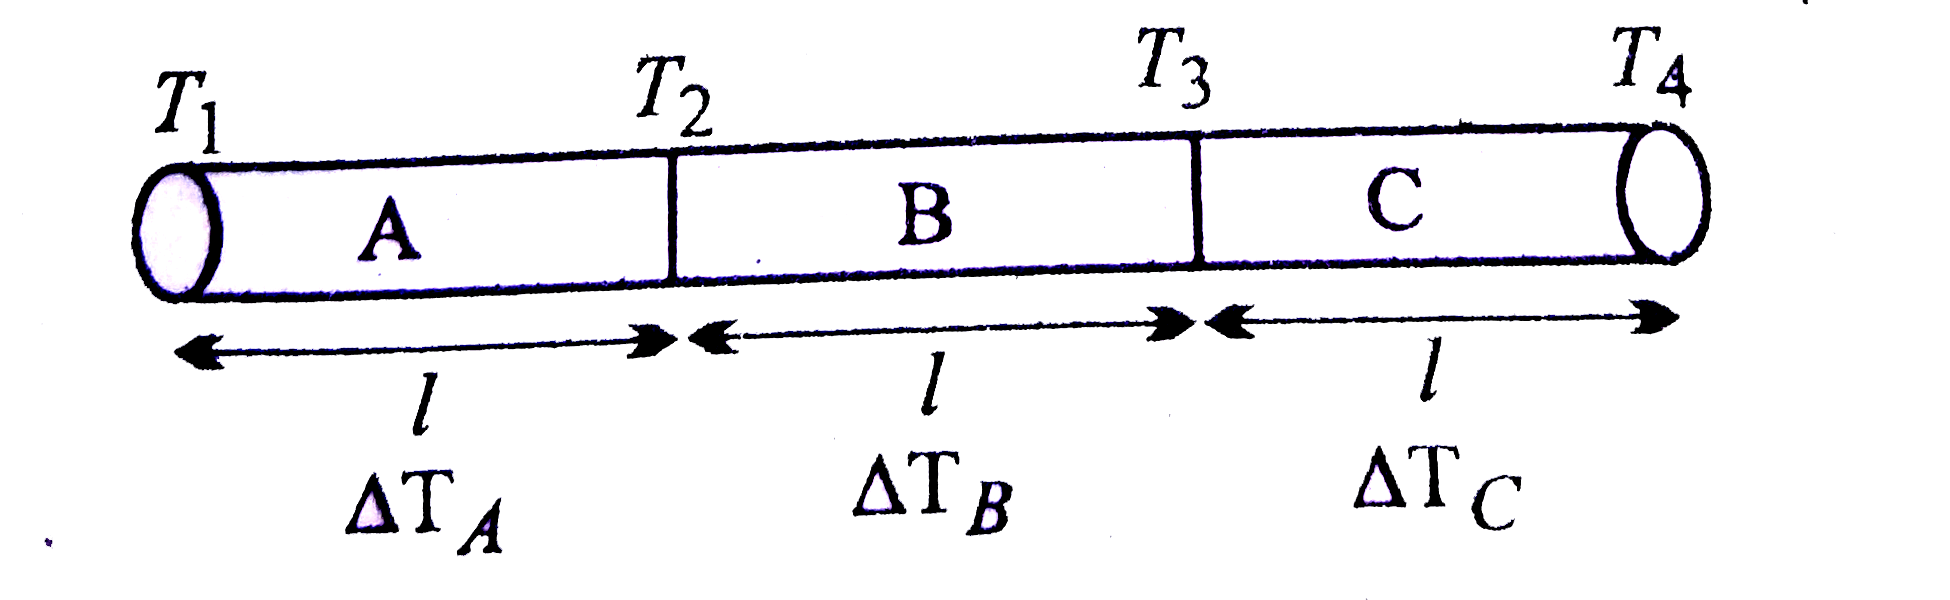 चित्र में तीन विभिन्न पदार्थो के छड़ें  A,B तथा C मिलाकर   एक छड़  बनाया गया , सभी छड़ों की लंबाइयाँ तथा अनुप्रस्थ काट क्षेत्रफल  समान है | ताप की स्थायी  अवस्था में ऊष्मा प्रवाह एक सिरे से दूसरे सिरे की और हो रहा है | यदि K(B) gt K(A)gt K(C)  है तो छड़ों  के सिरों के बीच तापांतरको अवरोही  कर्म में लिखिये|